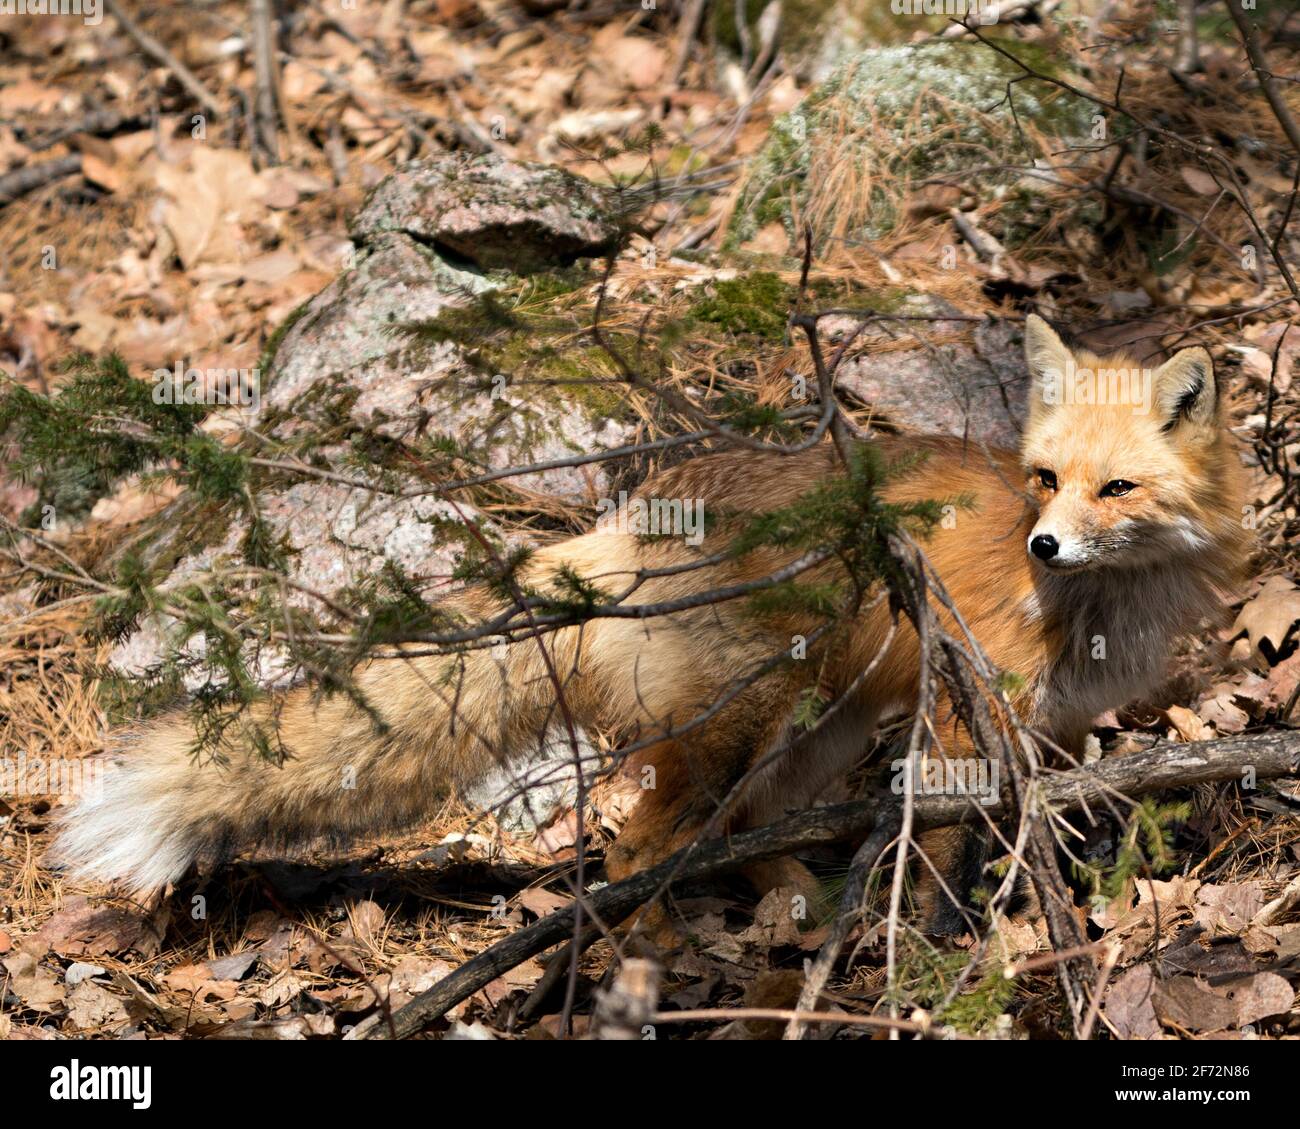 Red Fox primo piano profilo vista in primavera con fondo muss rock nel suo ambiente e habitat. Immagine FOX. Immagine. Verticale. Foto Stock